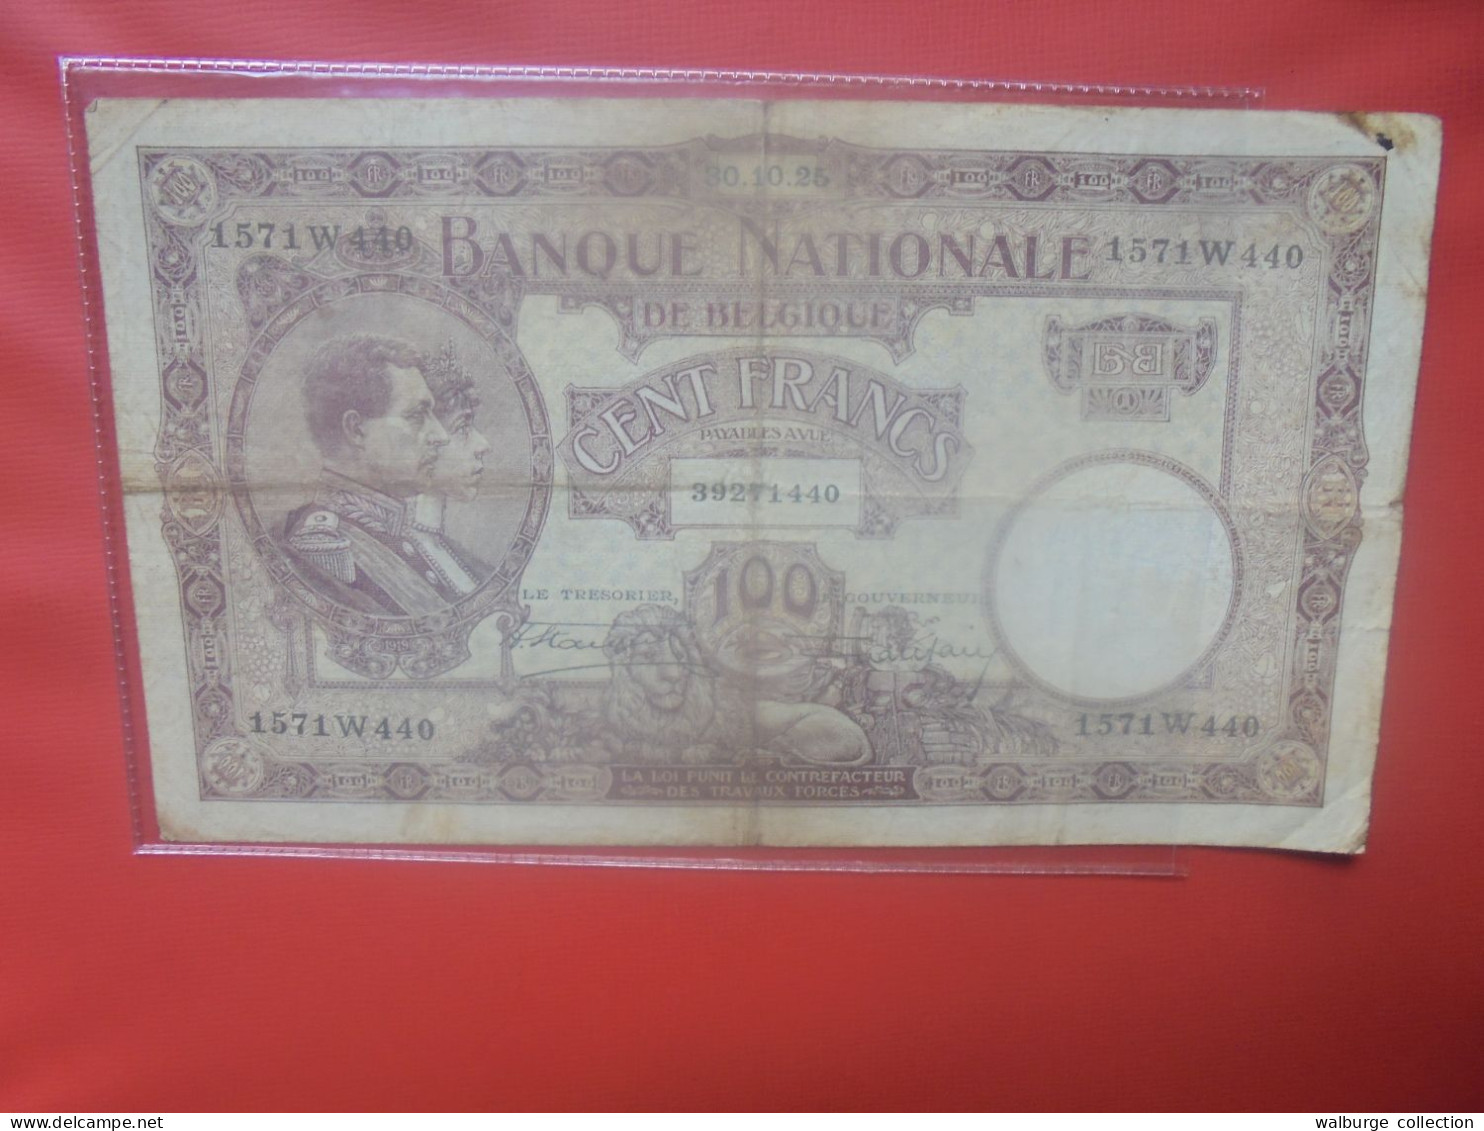 BELGIQUE 100 Francs 1925 Circuler (B.18) - 100 Francs & 100 Francs-20 Belgas